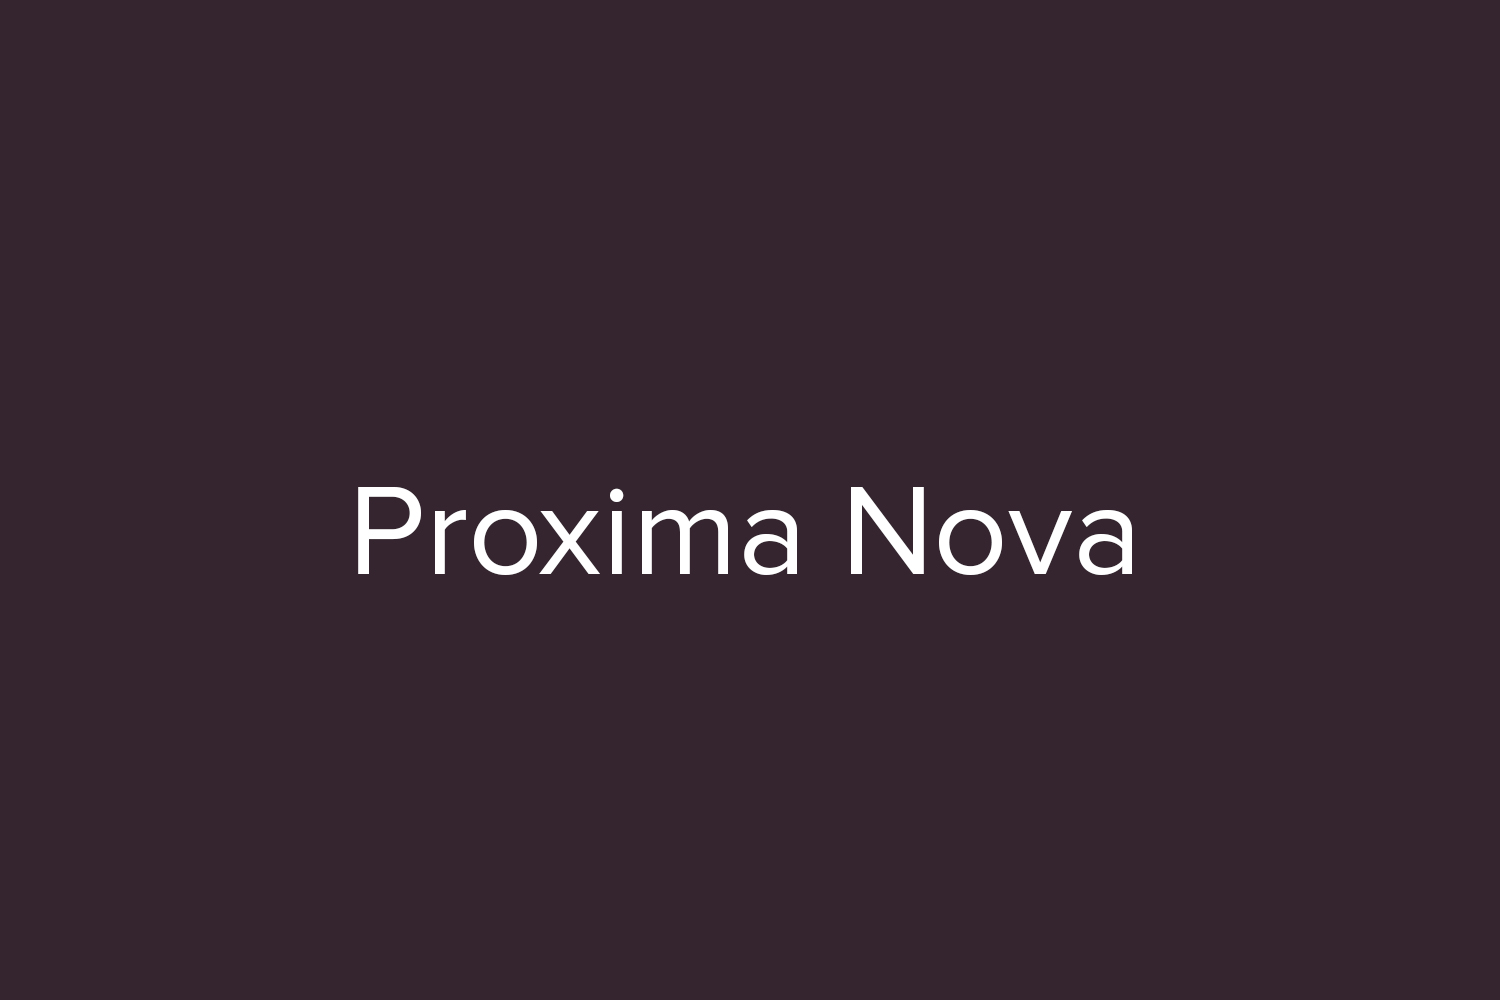 proxima nova bold free font download